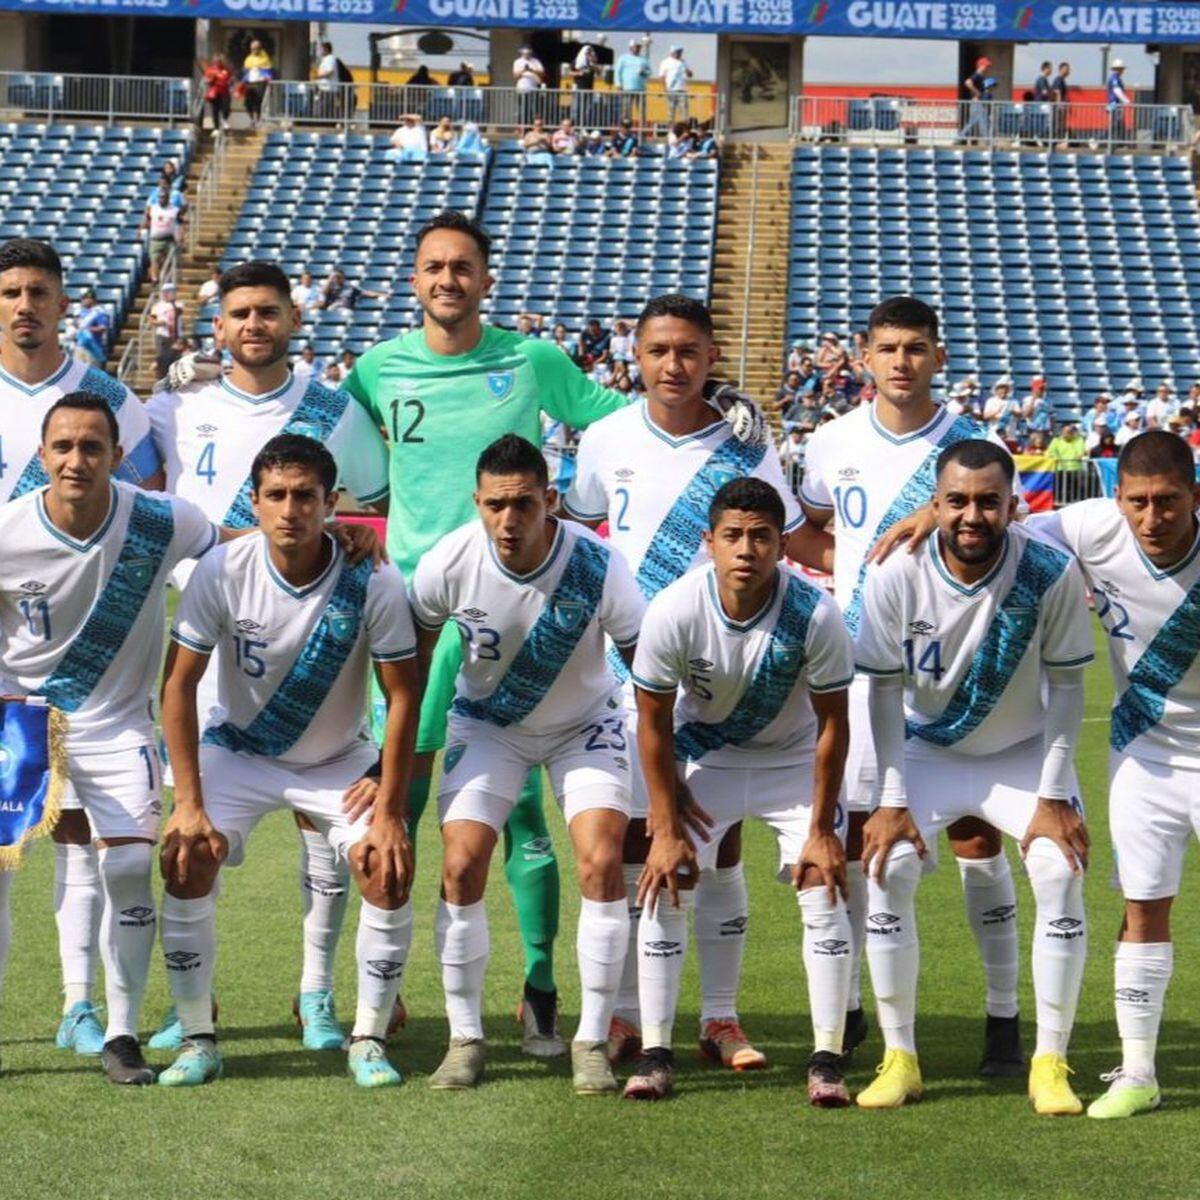 Informe sobre el camino de los árbitros uruguayos al fútbol profesional, la diaria